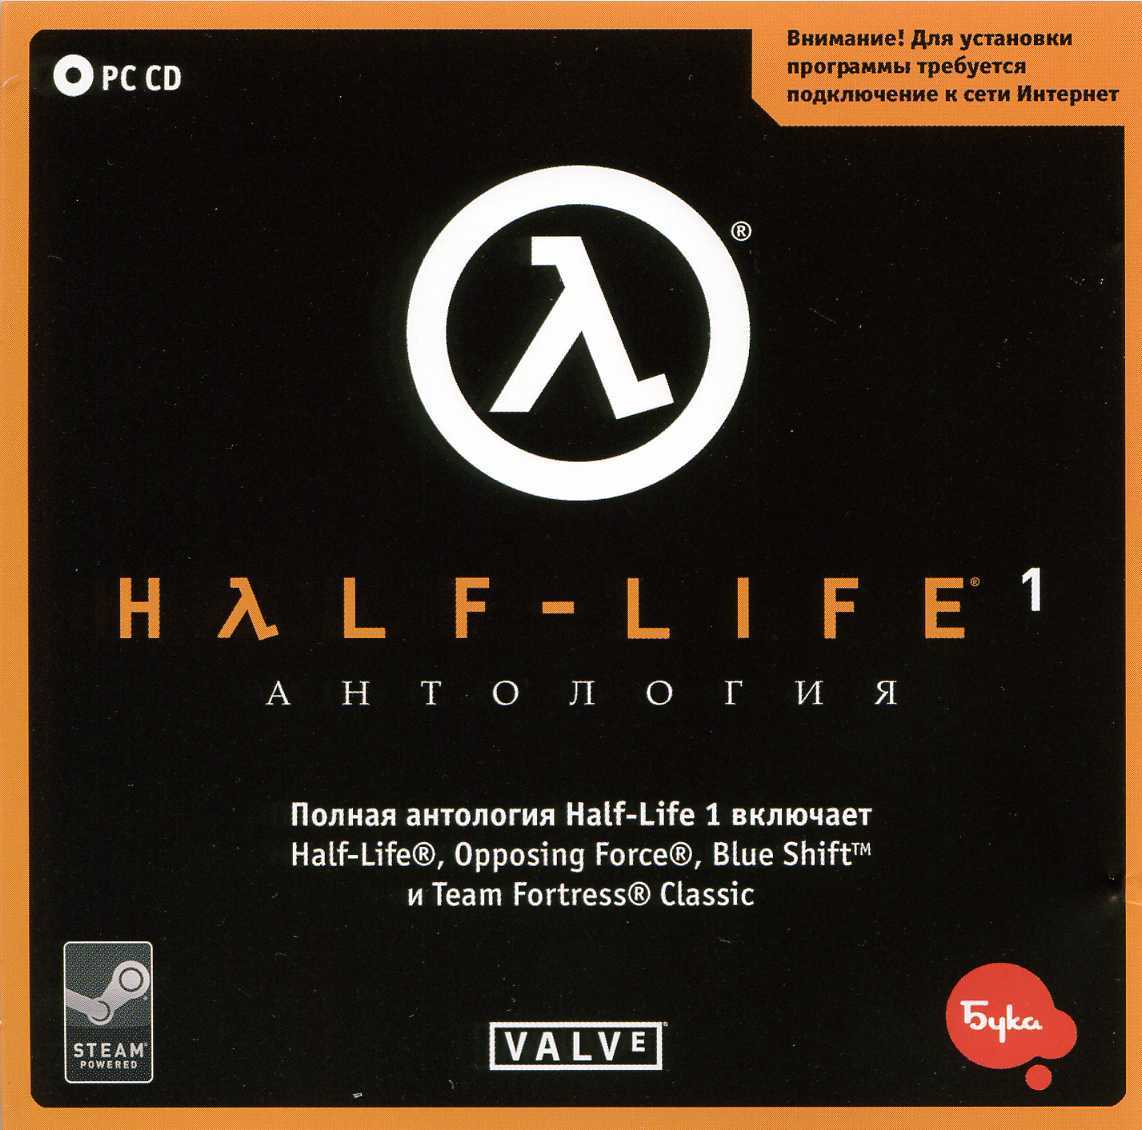 Диск half life. Half Life 2 Anthology диск. Half Life 1 обложка 1998 диск. CD Key half Life 2. CD Key half Life 1.